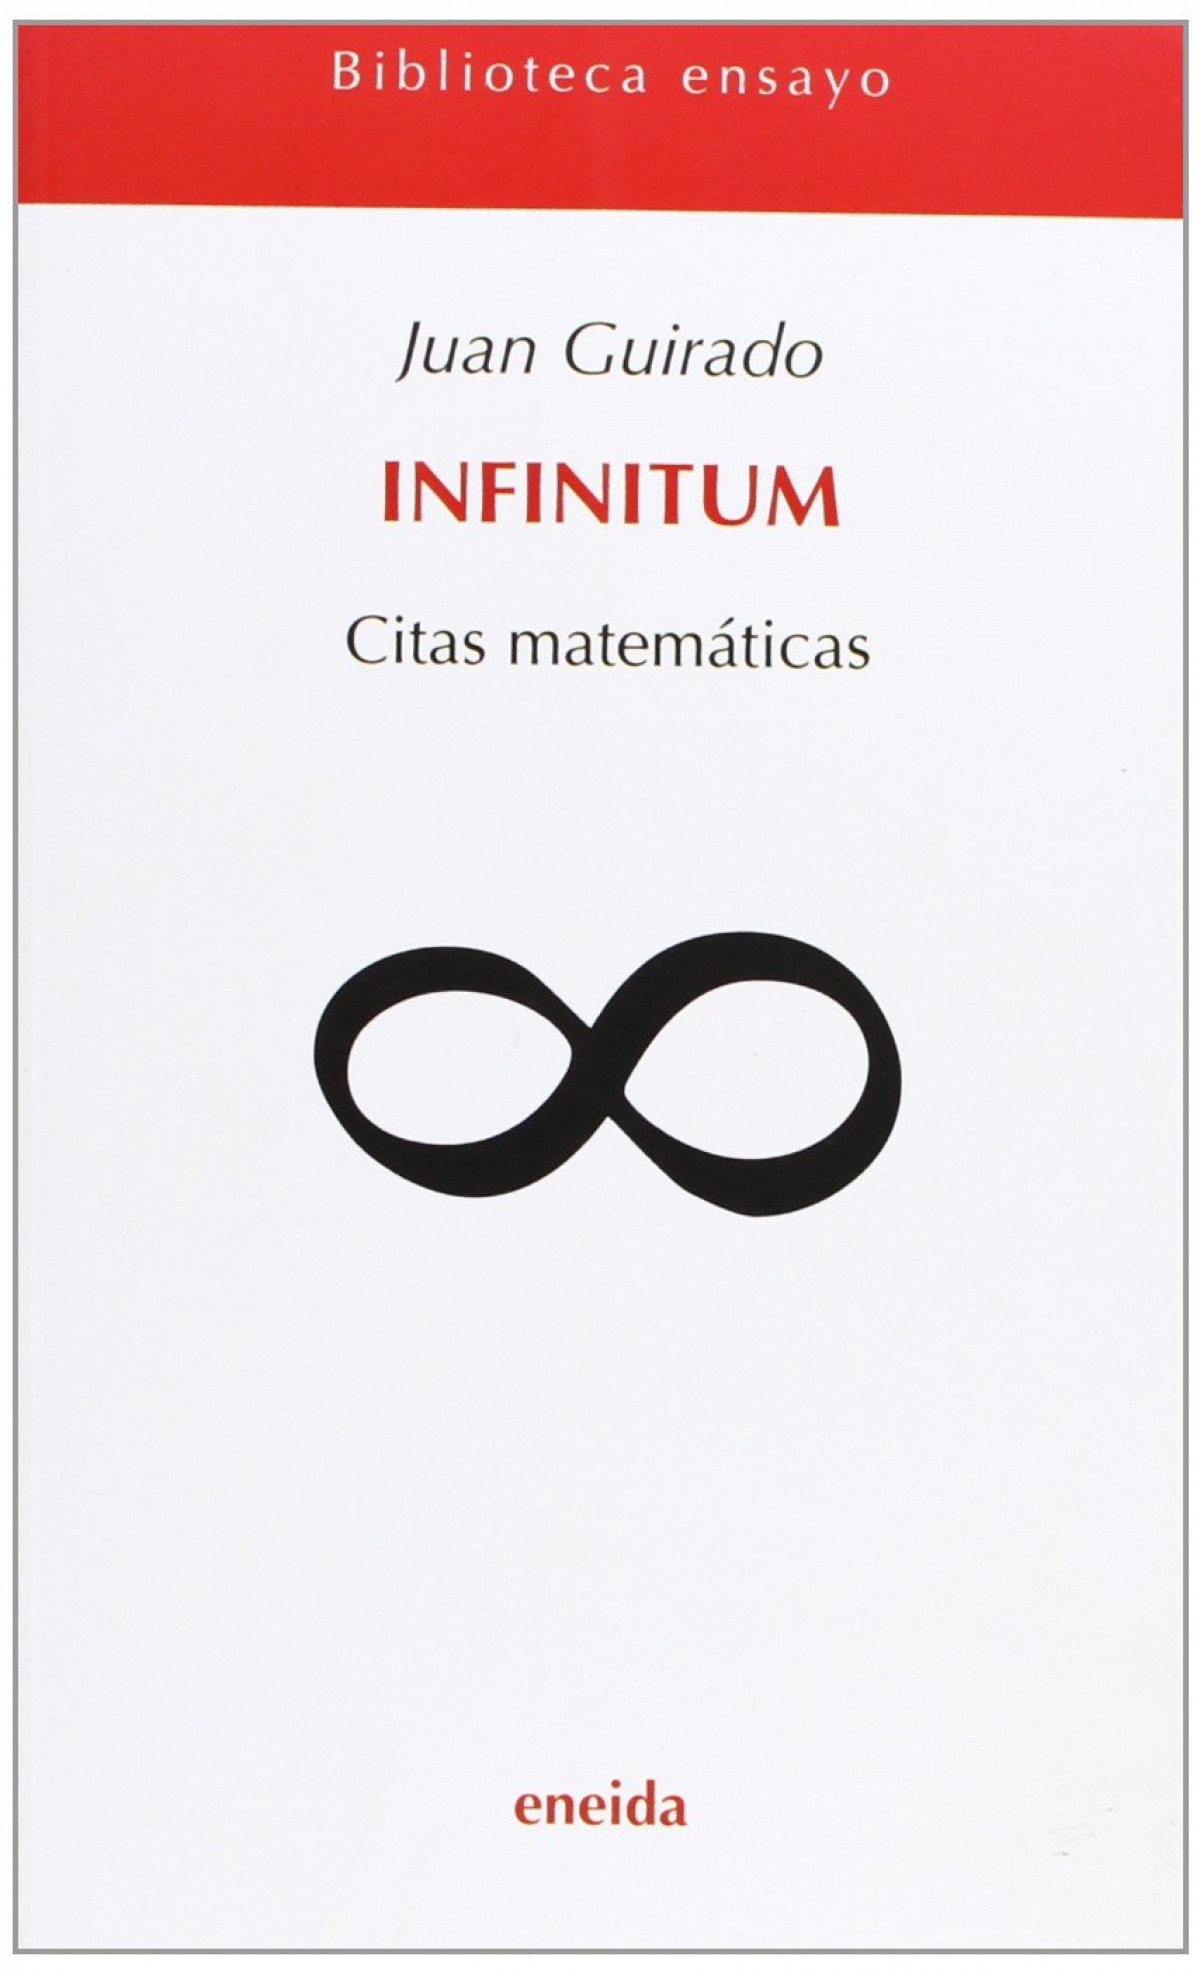 Infinitun Citas matematicas - Guirado, Juan